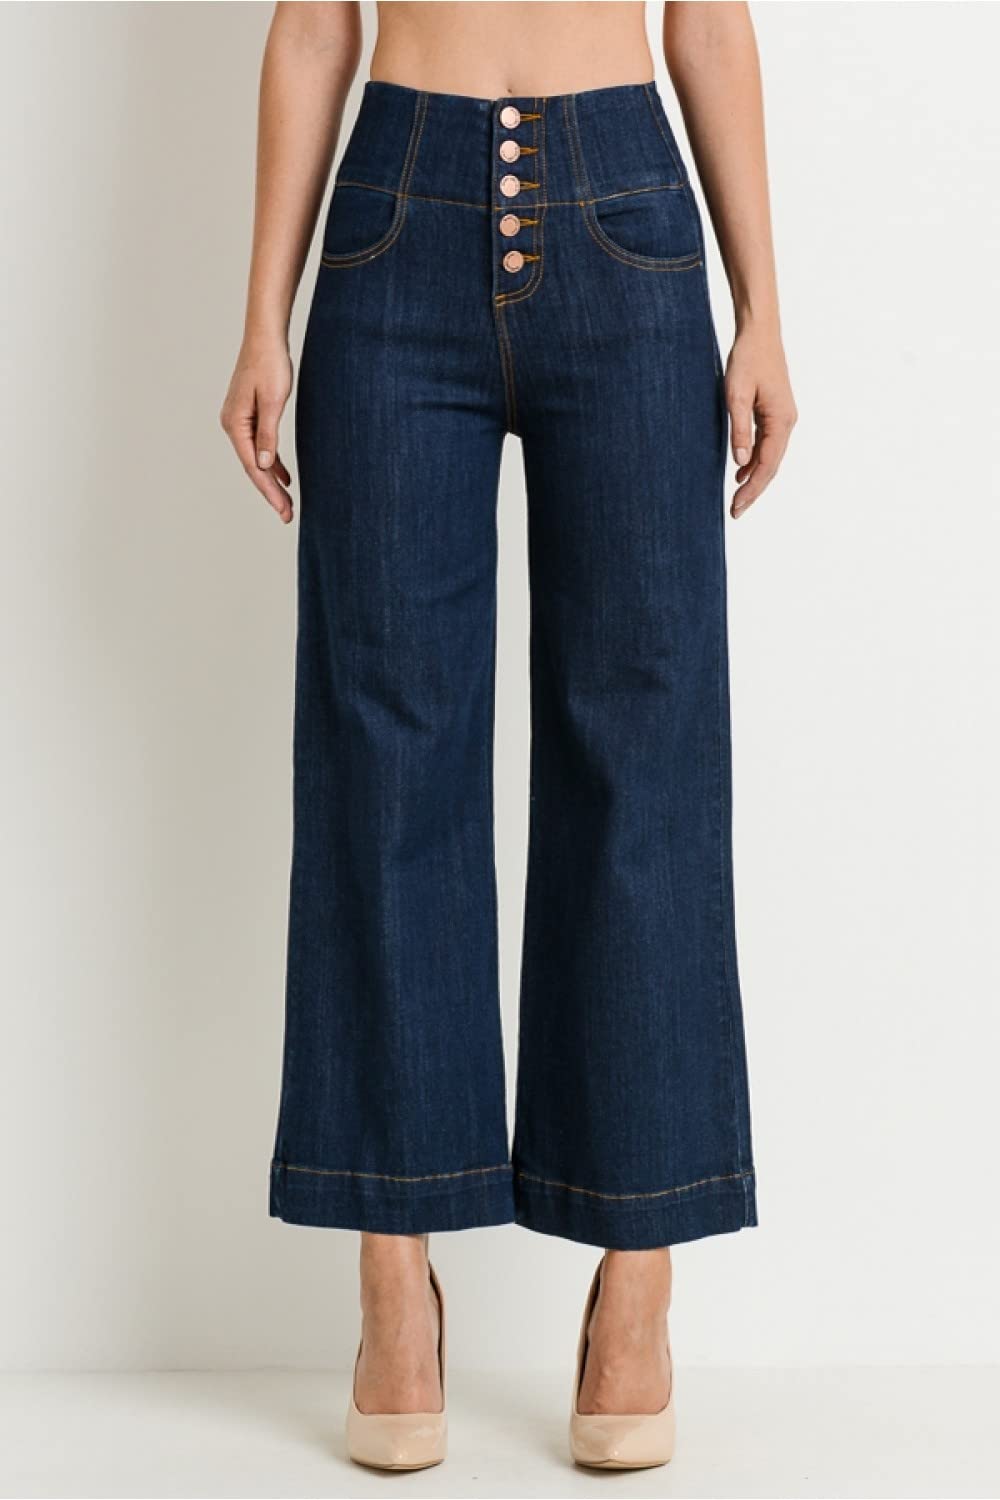 Women's High-Rise Waist 5 Button Front Wide Leg Denim Jean Vintage Culottes Pants